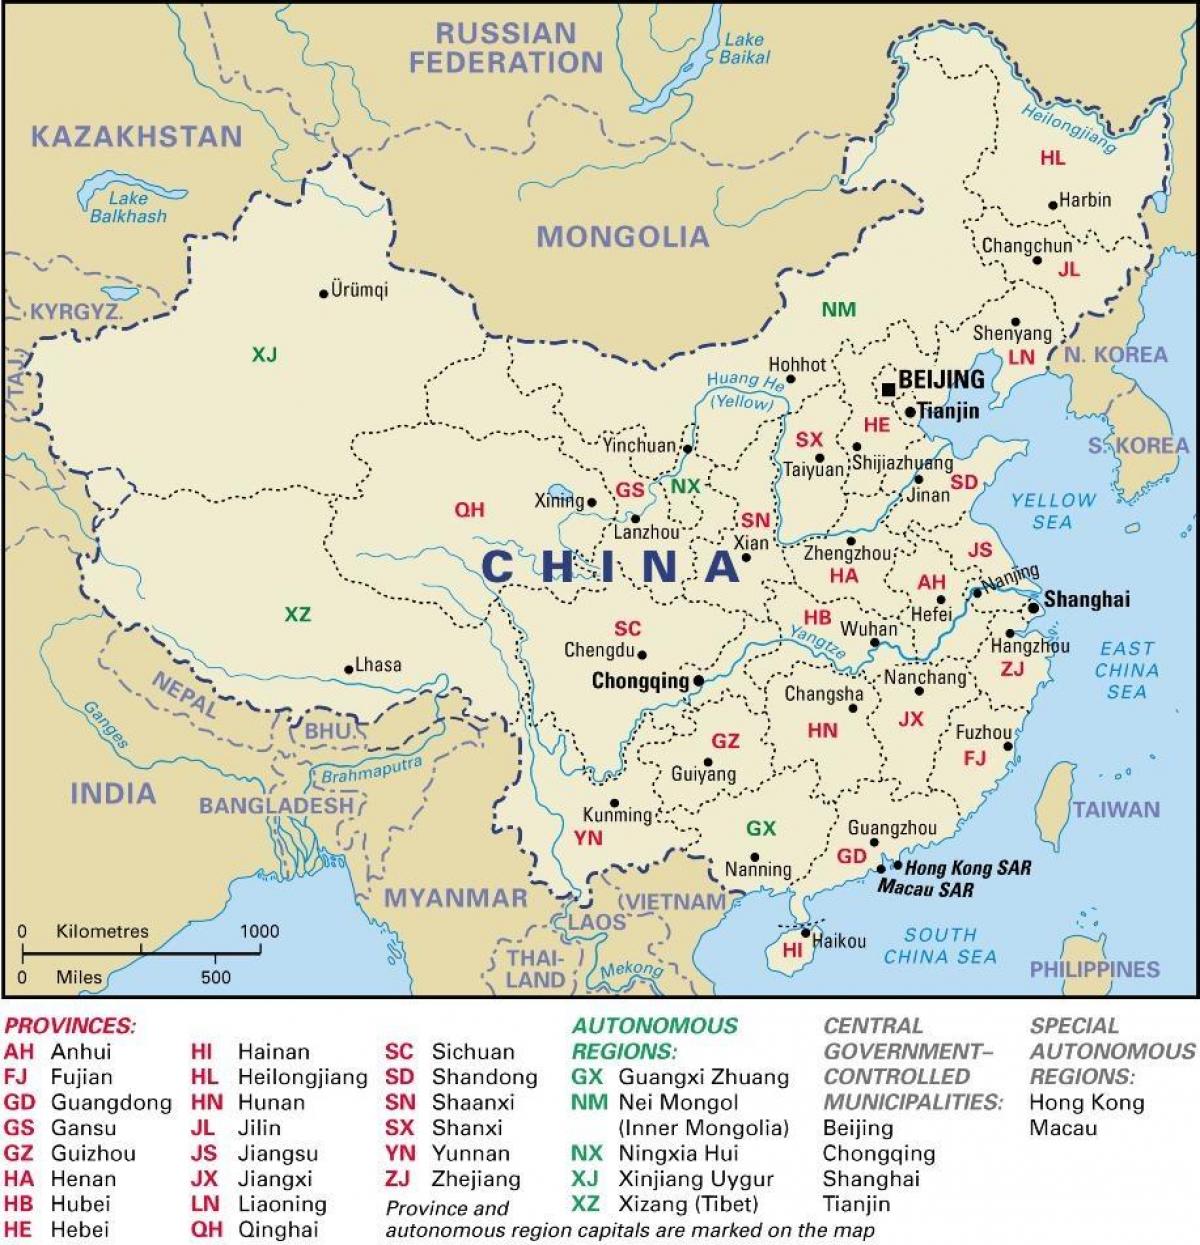 les provinces de la carte de la Chine